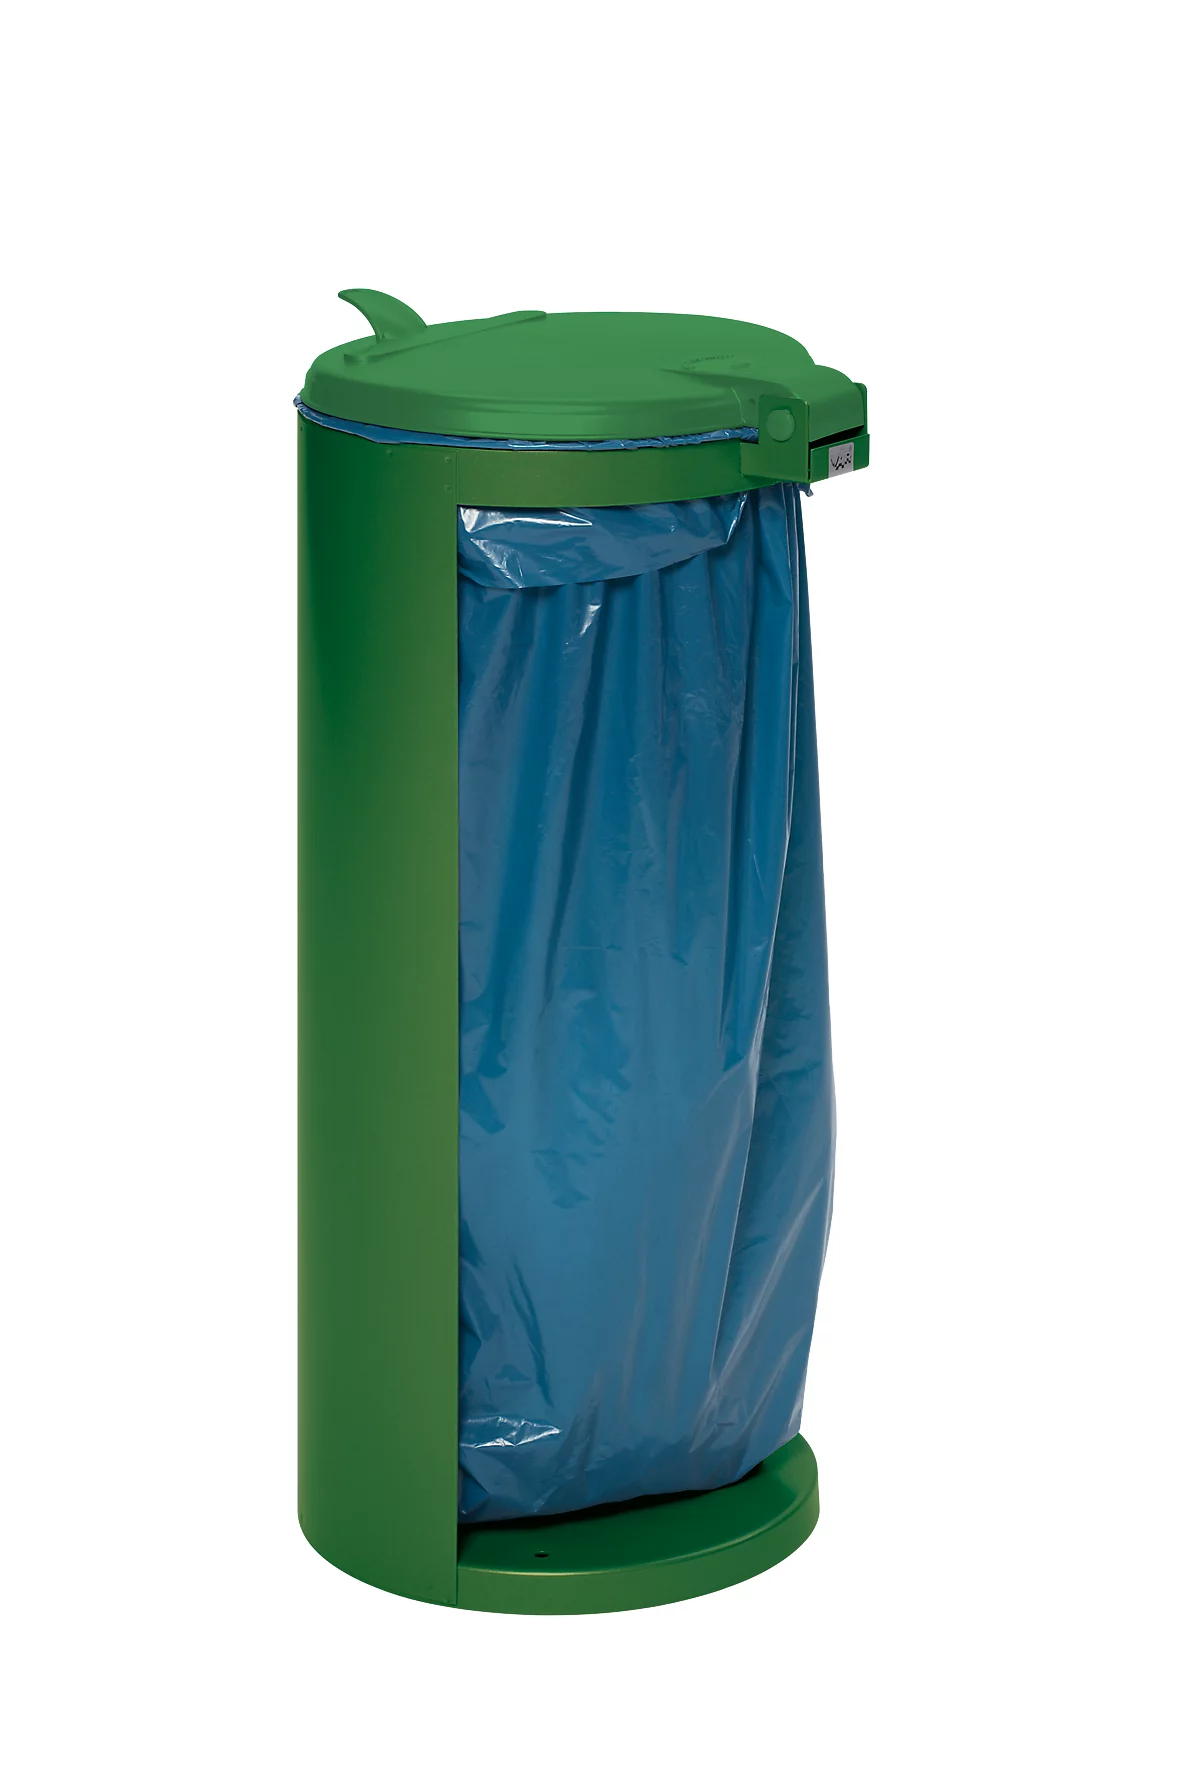 Abfallsammler mit hinterer Öffnung, grün, Gewicht 8,75 kg